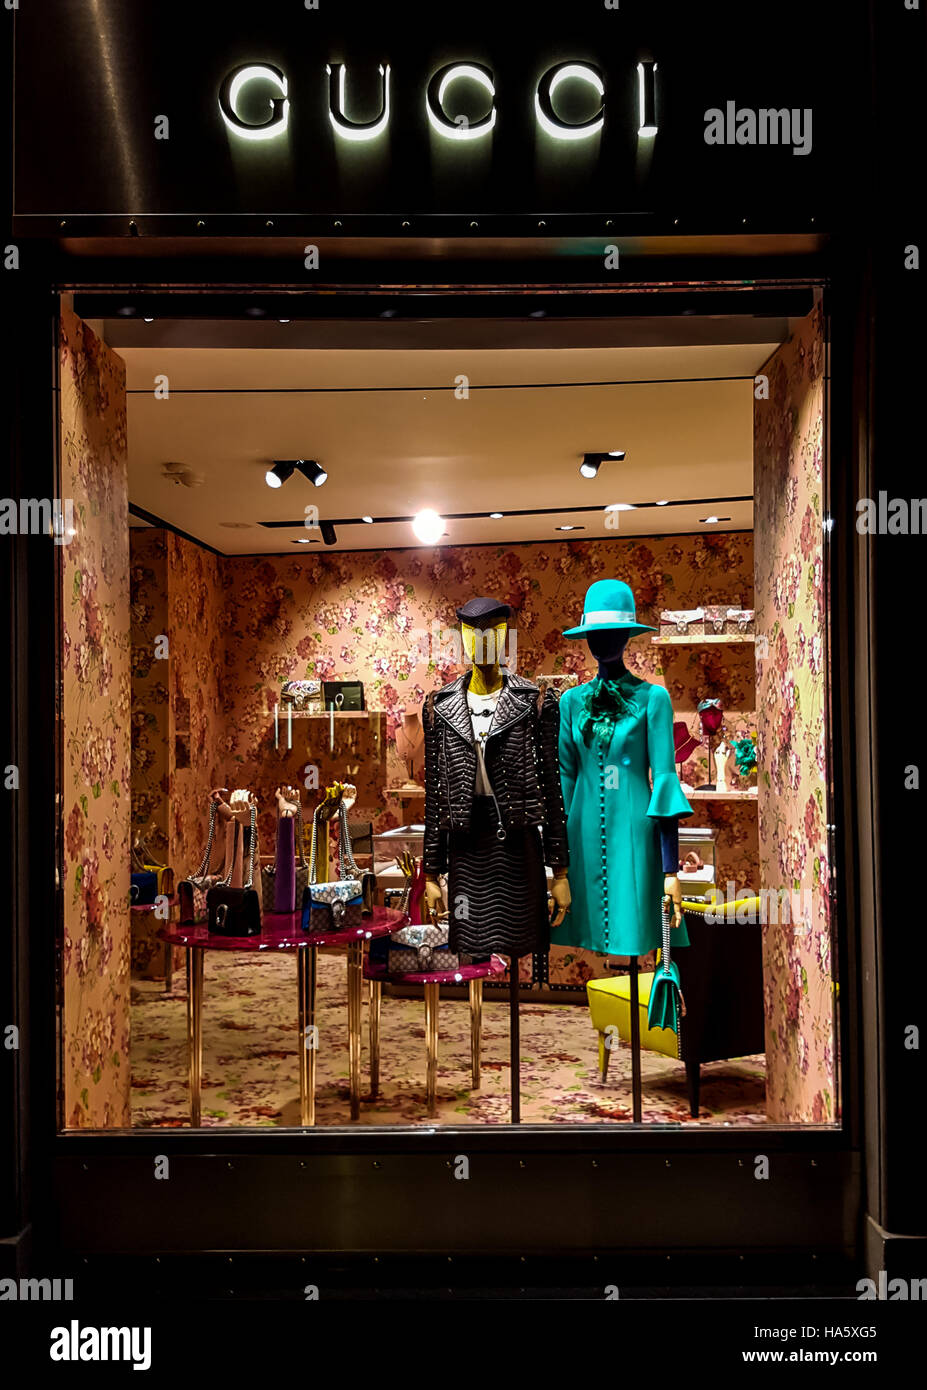 Gucci bolsos de lujo, la ropa y zapatos sentarse expuestos para la venta dentro de una tienda de en Florencia, Italia Fotografía de stock -